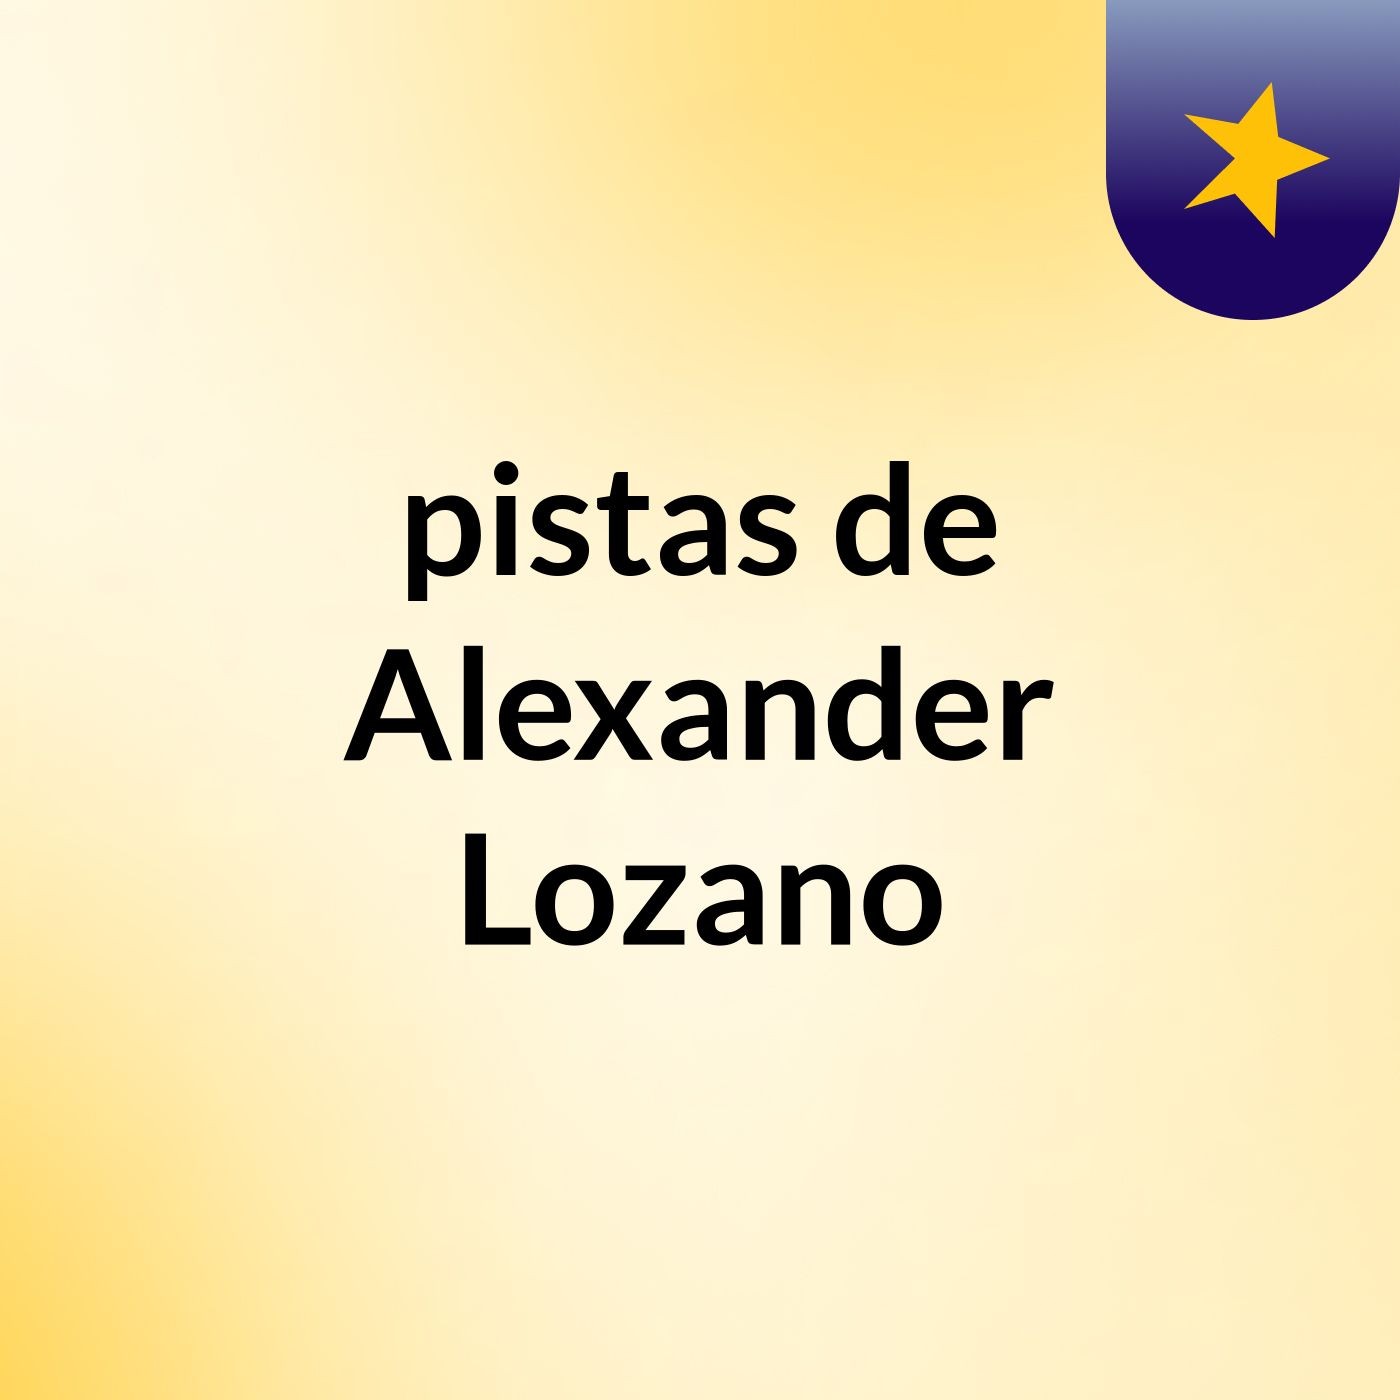 pistas de Alexander Lozano